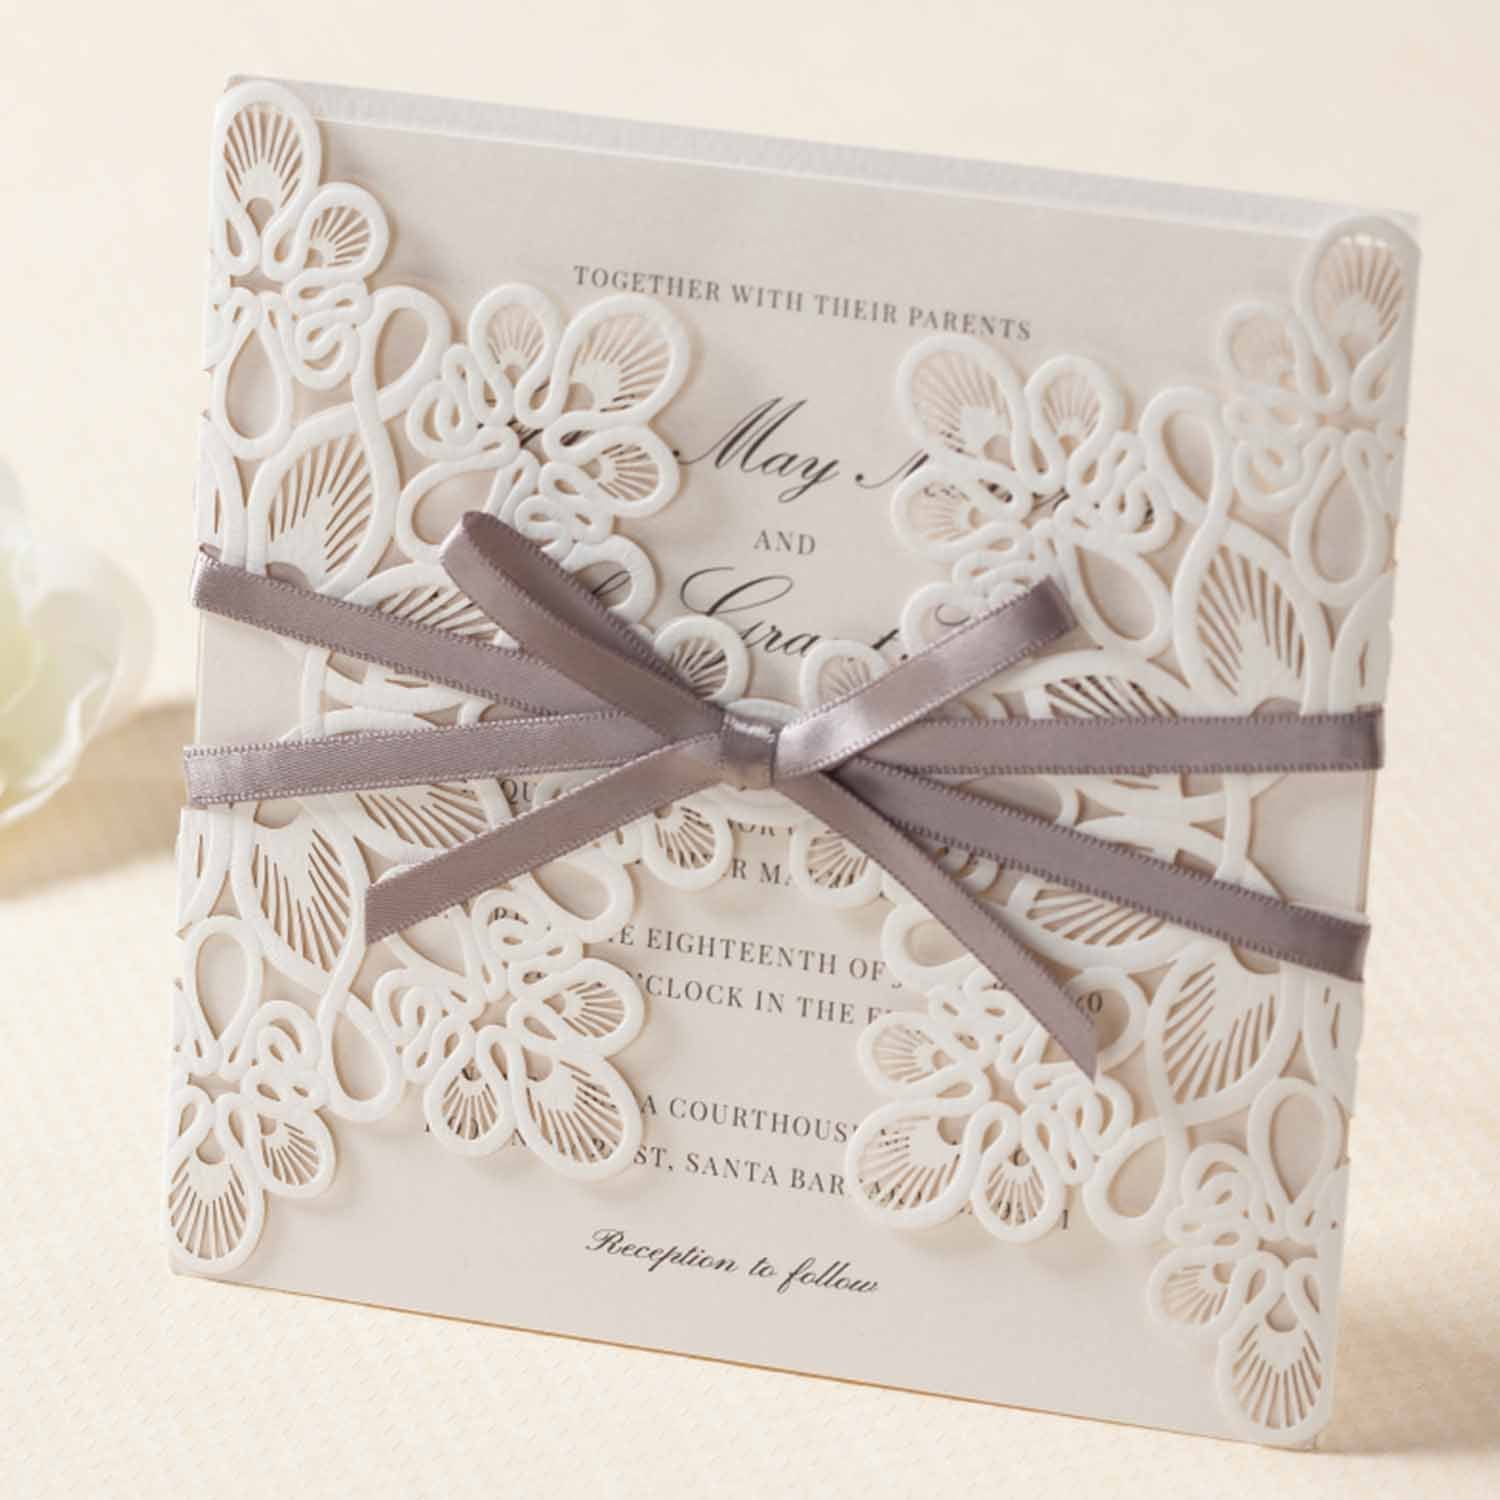 Laser cut wedding invitations - WM207_WH